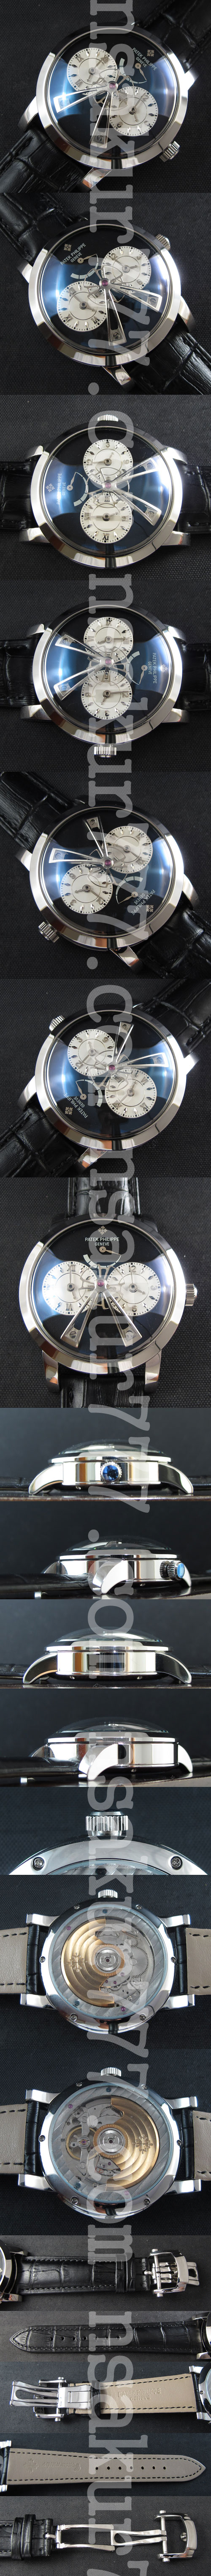 【腕時計おすすめ】パテック フィリップコピー時計：デュアルタイム　パワー リザーブ Asian 21600振動